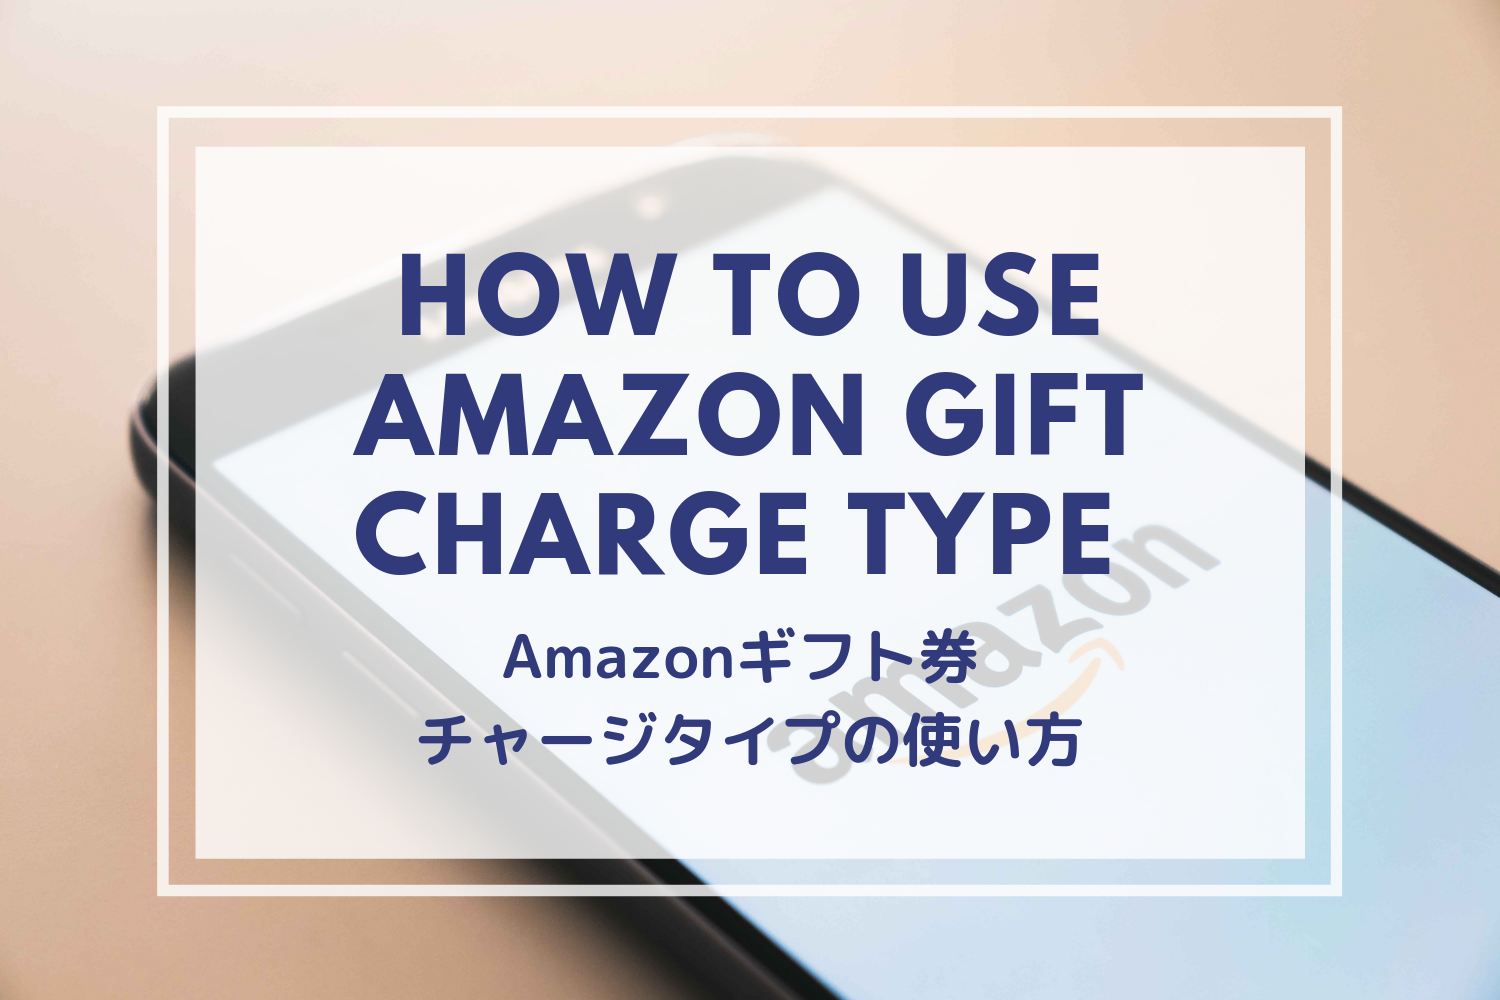 Amazon gift charge type